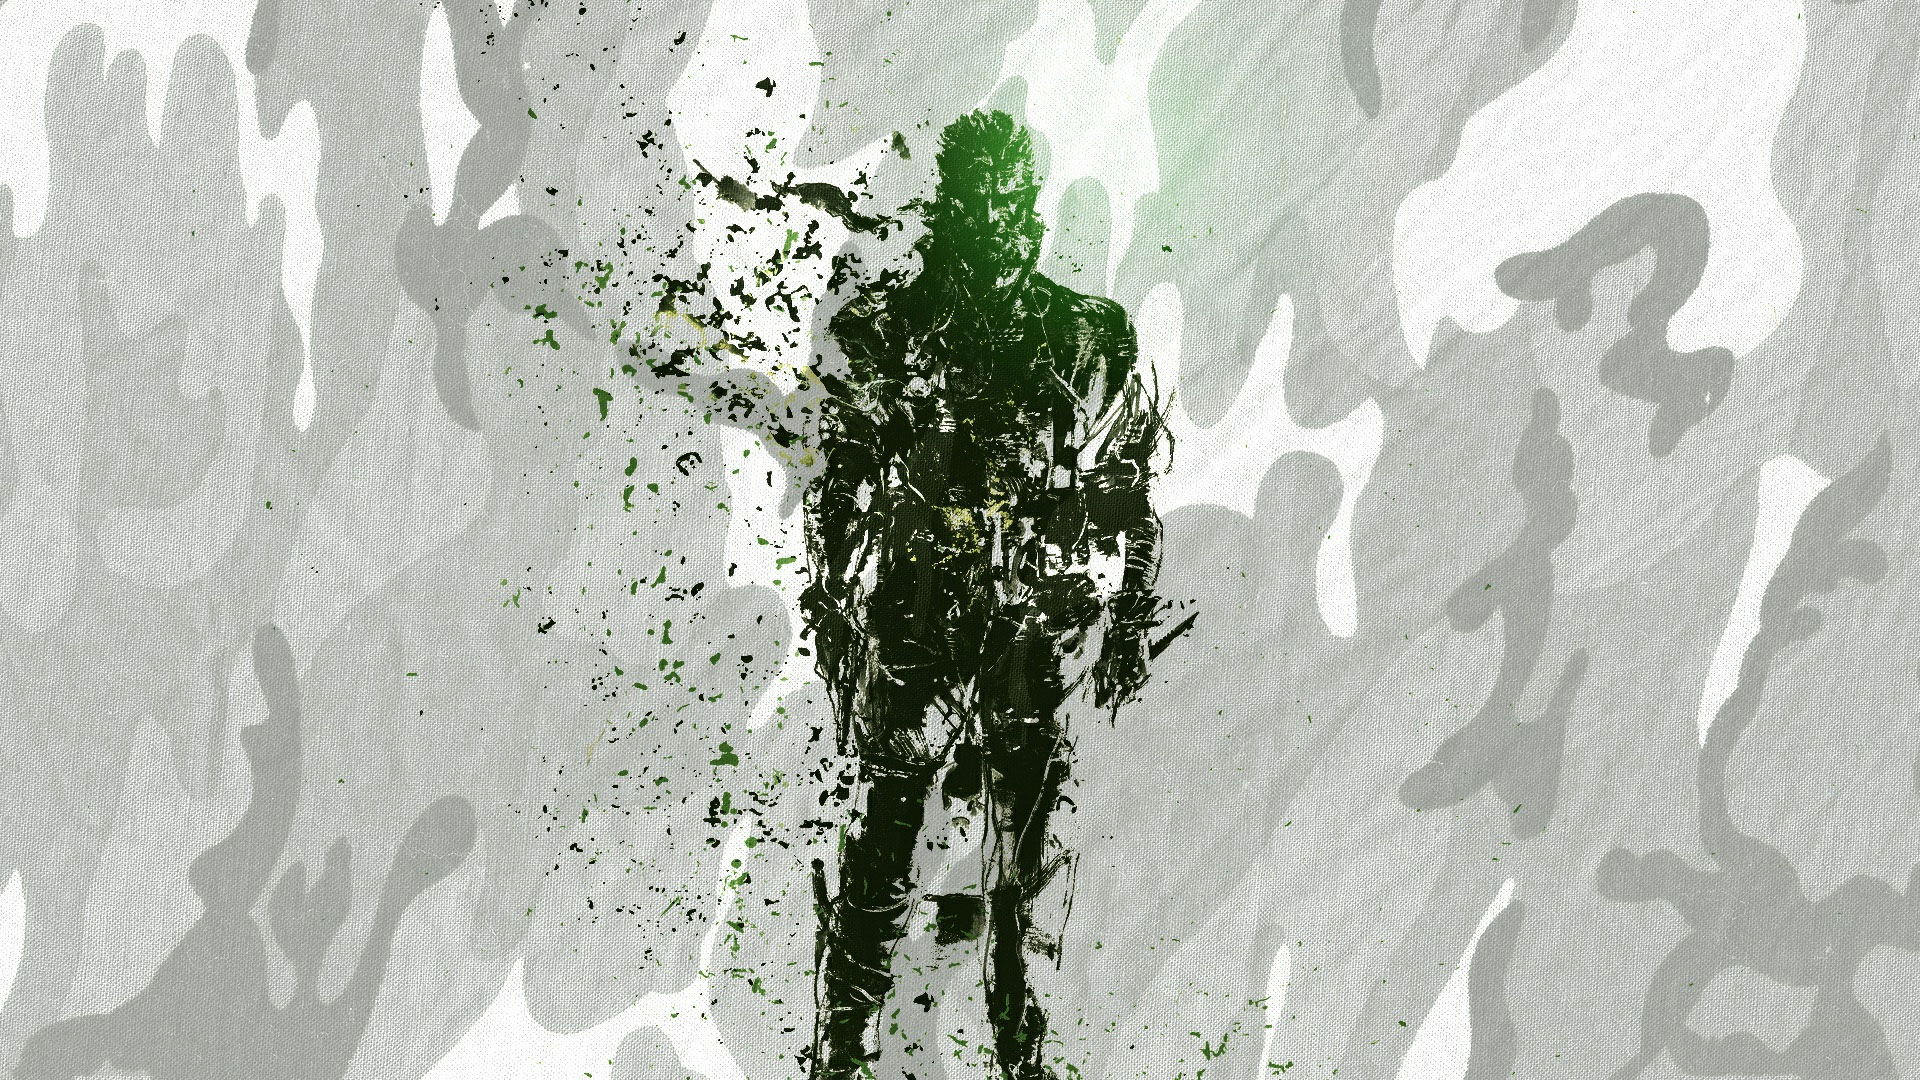 Metal Gear Solid HD Wallpaper | 1920x1080 | ID:21610